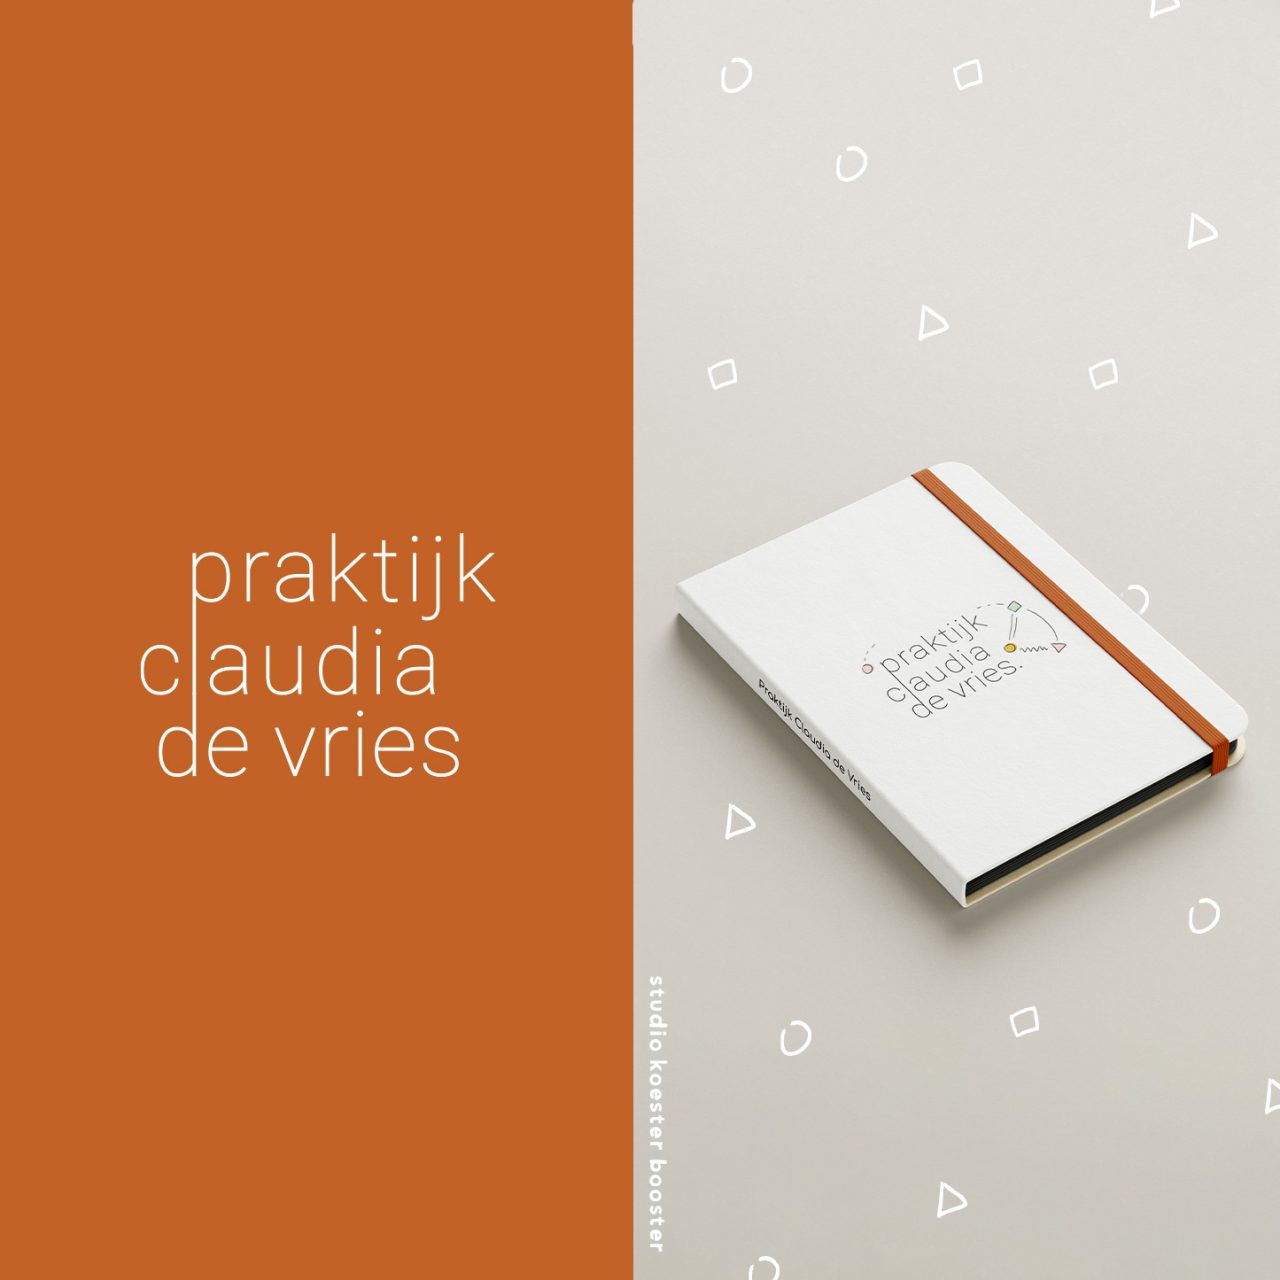 logo praktijk claudia de vries en notebook met gekleurd logo